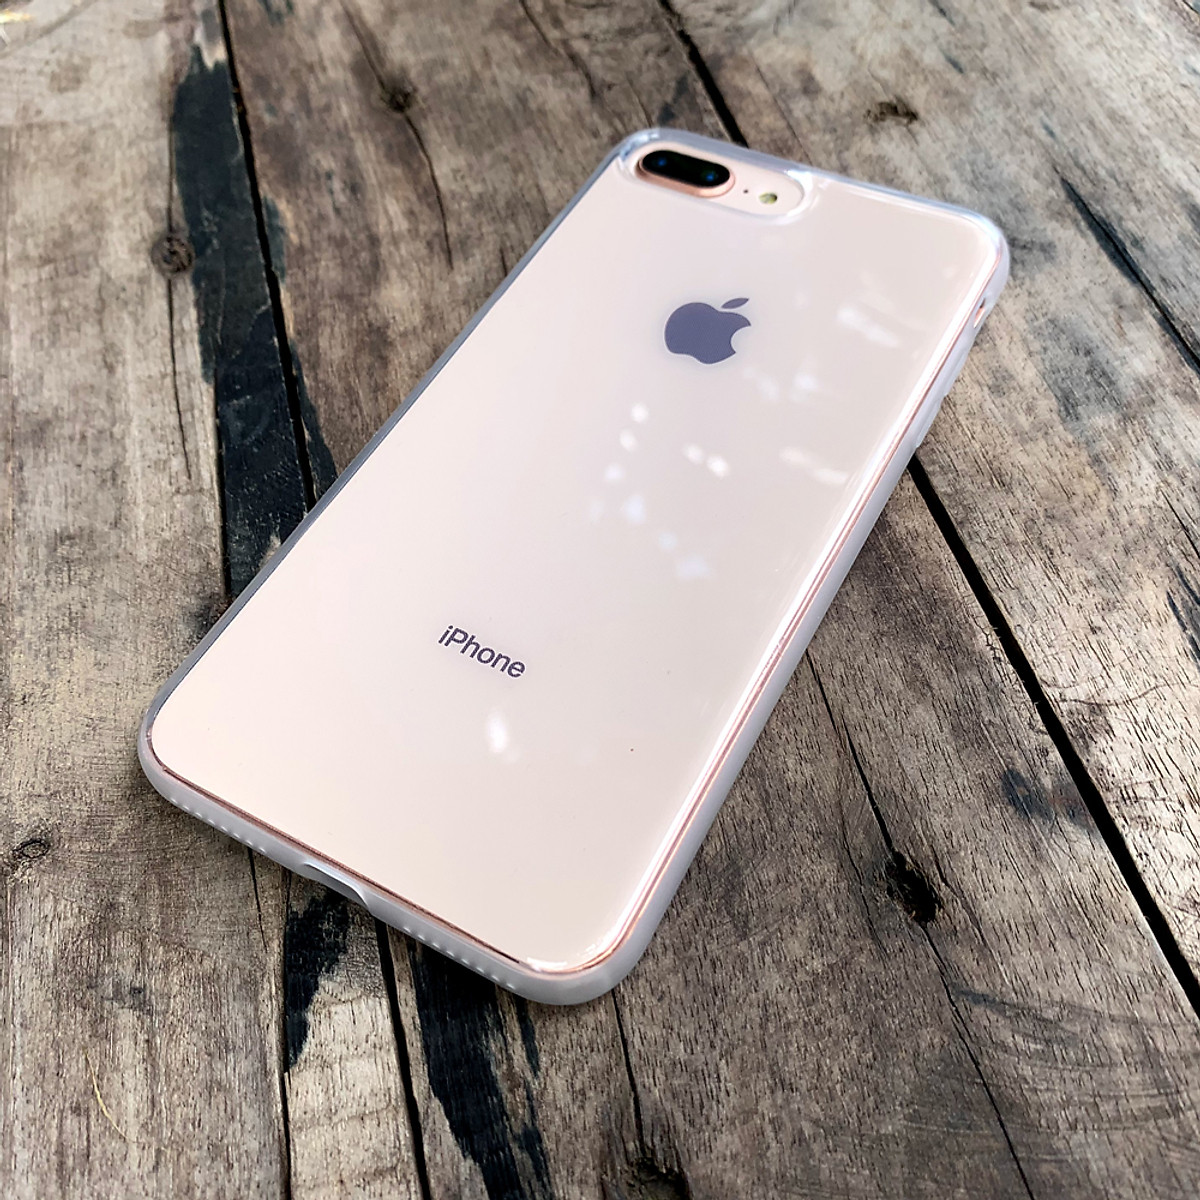 iPhone 8 Plus trắng – chiếc smartphone thời thượng sẽ thể hiện phong cách của bạn một cách hoàn hảo! Với thiết kế sang trọng và màn hình tuyệt đẹp, bạn sẽ có trải nghiệm giải trí tuyệt vời chỉ với một chiếc điện thoại trong tay. Điều đặc biệt là, phiên bản này được nâng cấp và có thêm các tính năng mới nhất. Hãy cùng khám phá!